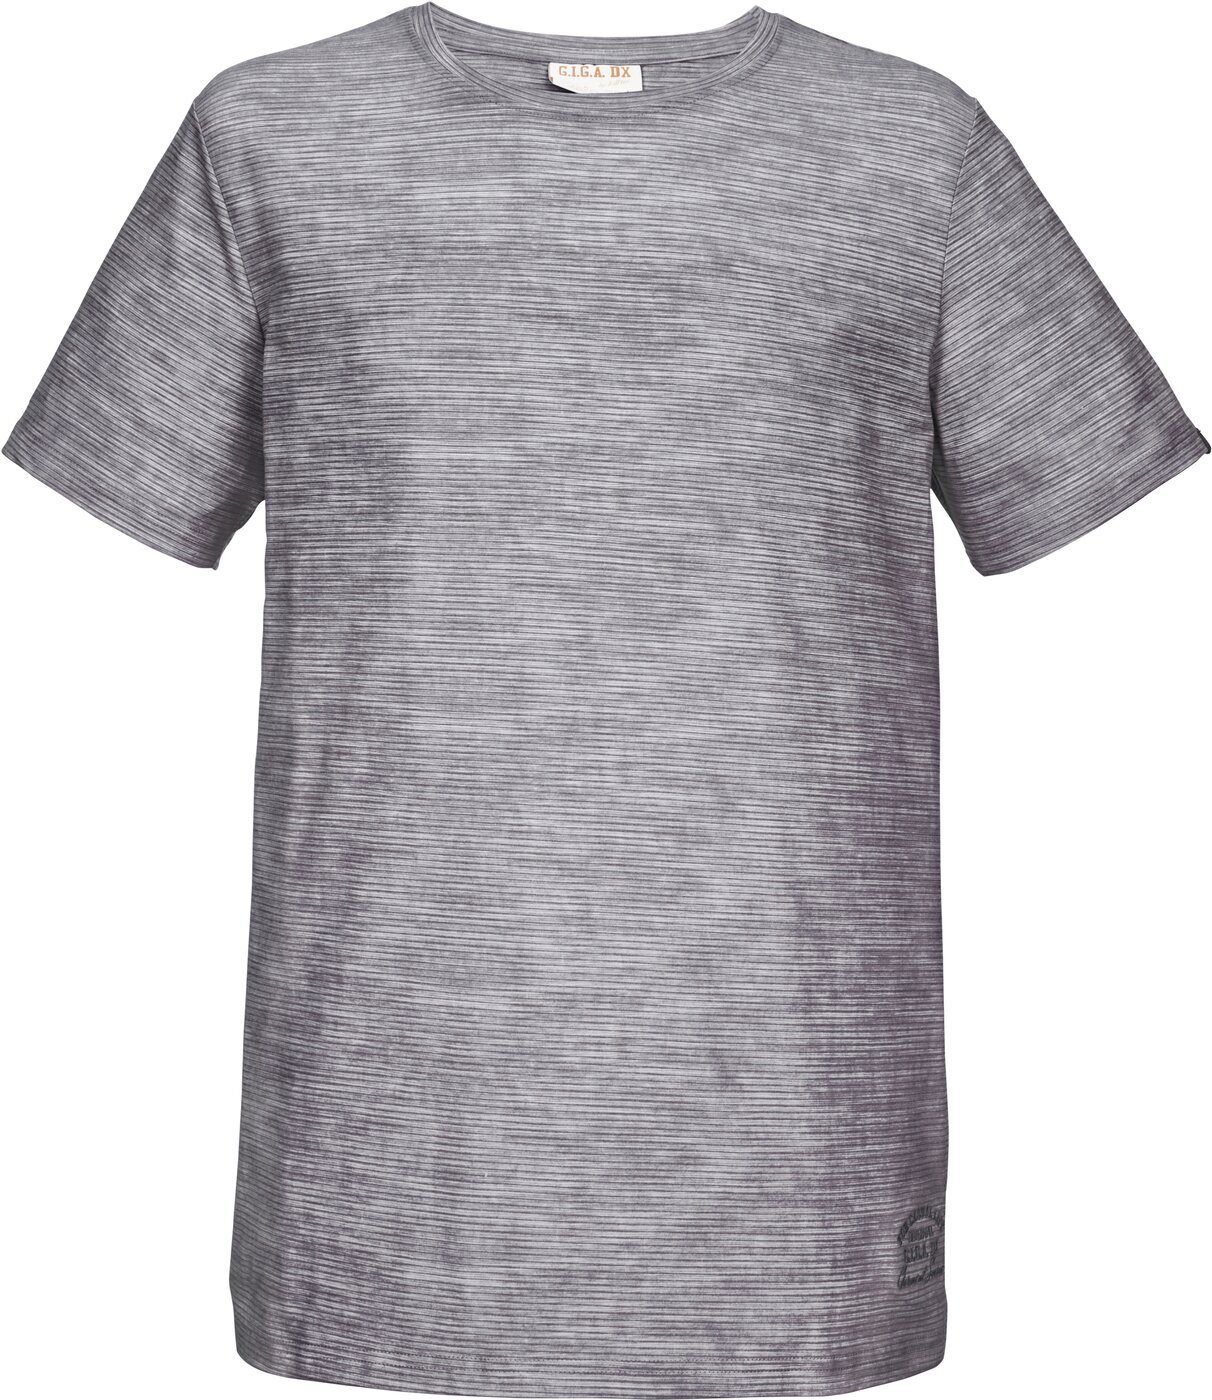 G.I.G.A. DX T-Shirt G.I.G.A. DX Herren T-Shirt in gestreifter Melange Optik